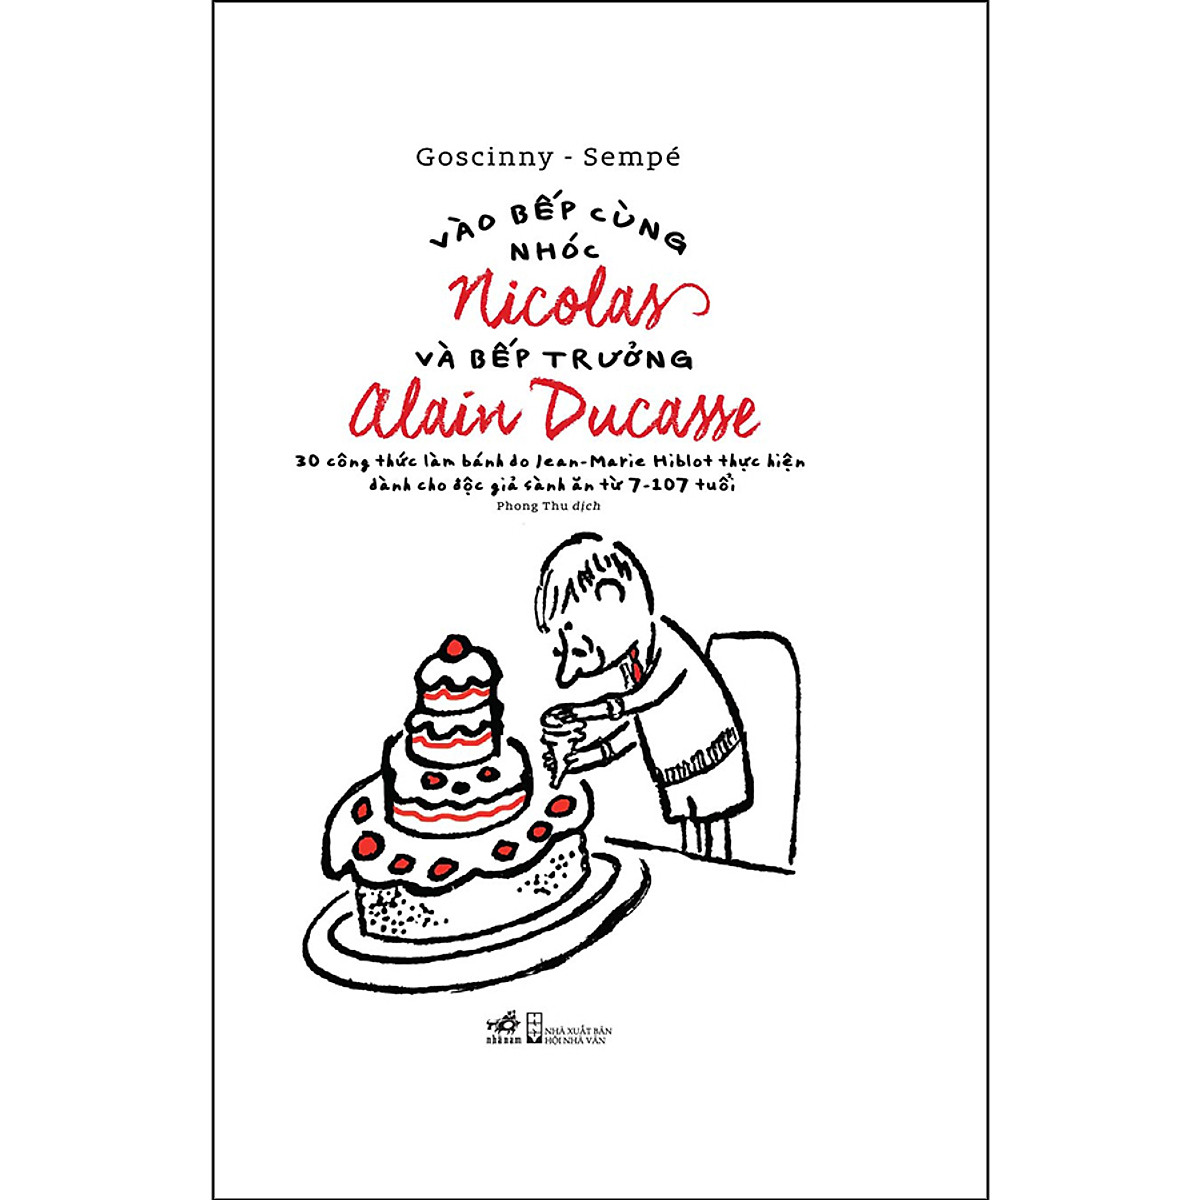 Combo 2 cuốn sách: Vào Bếp Cùng Nhóc Nicolas Và Bếp Trưởng Alain Ducasse + Nhóc Nicolas và các bạn